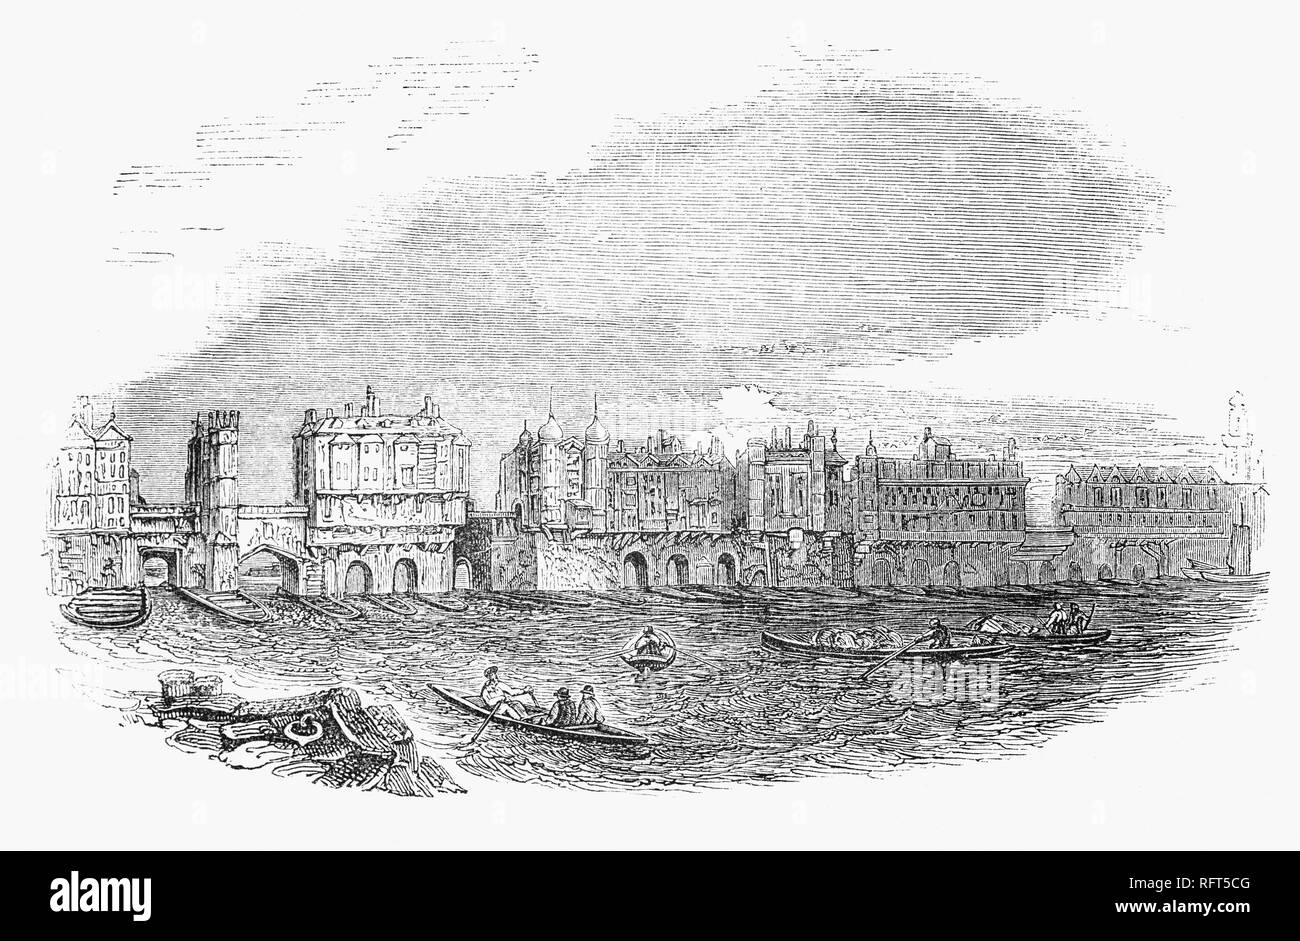 Dal 1710, la maggior parte delle case su London Bridge era stata ricostruita in stile di restauro e al fine di ampliare la carreggiata sono state costruite a strapiombo sul fiume. Le ultime case sono state costruite nel 1745, ma anche questi eleganti edifici avevano iniziato a rientrare entro un decennio. Nel 1756, il Ponte di Londra atto hanno dato alla città Corporation il potere di acquisto di tutte le proprietà sul ponte in modo che essi potrebbero essere demoliti e il ponte migliorata. Foto Stock